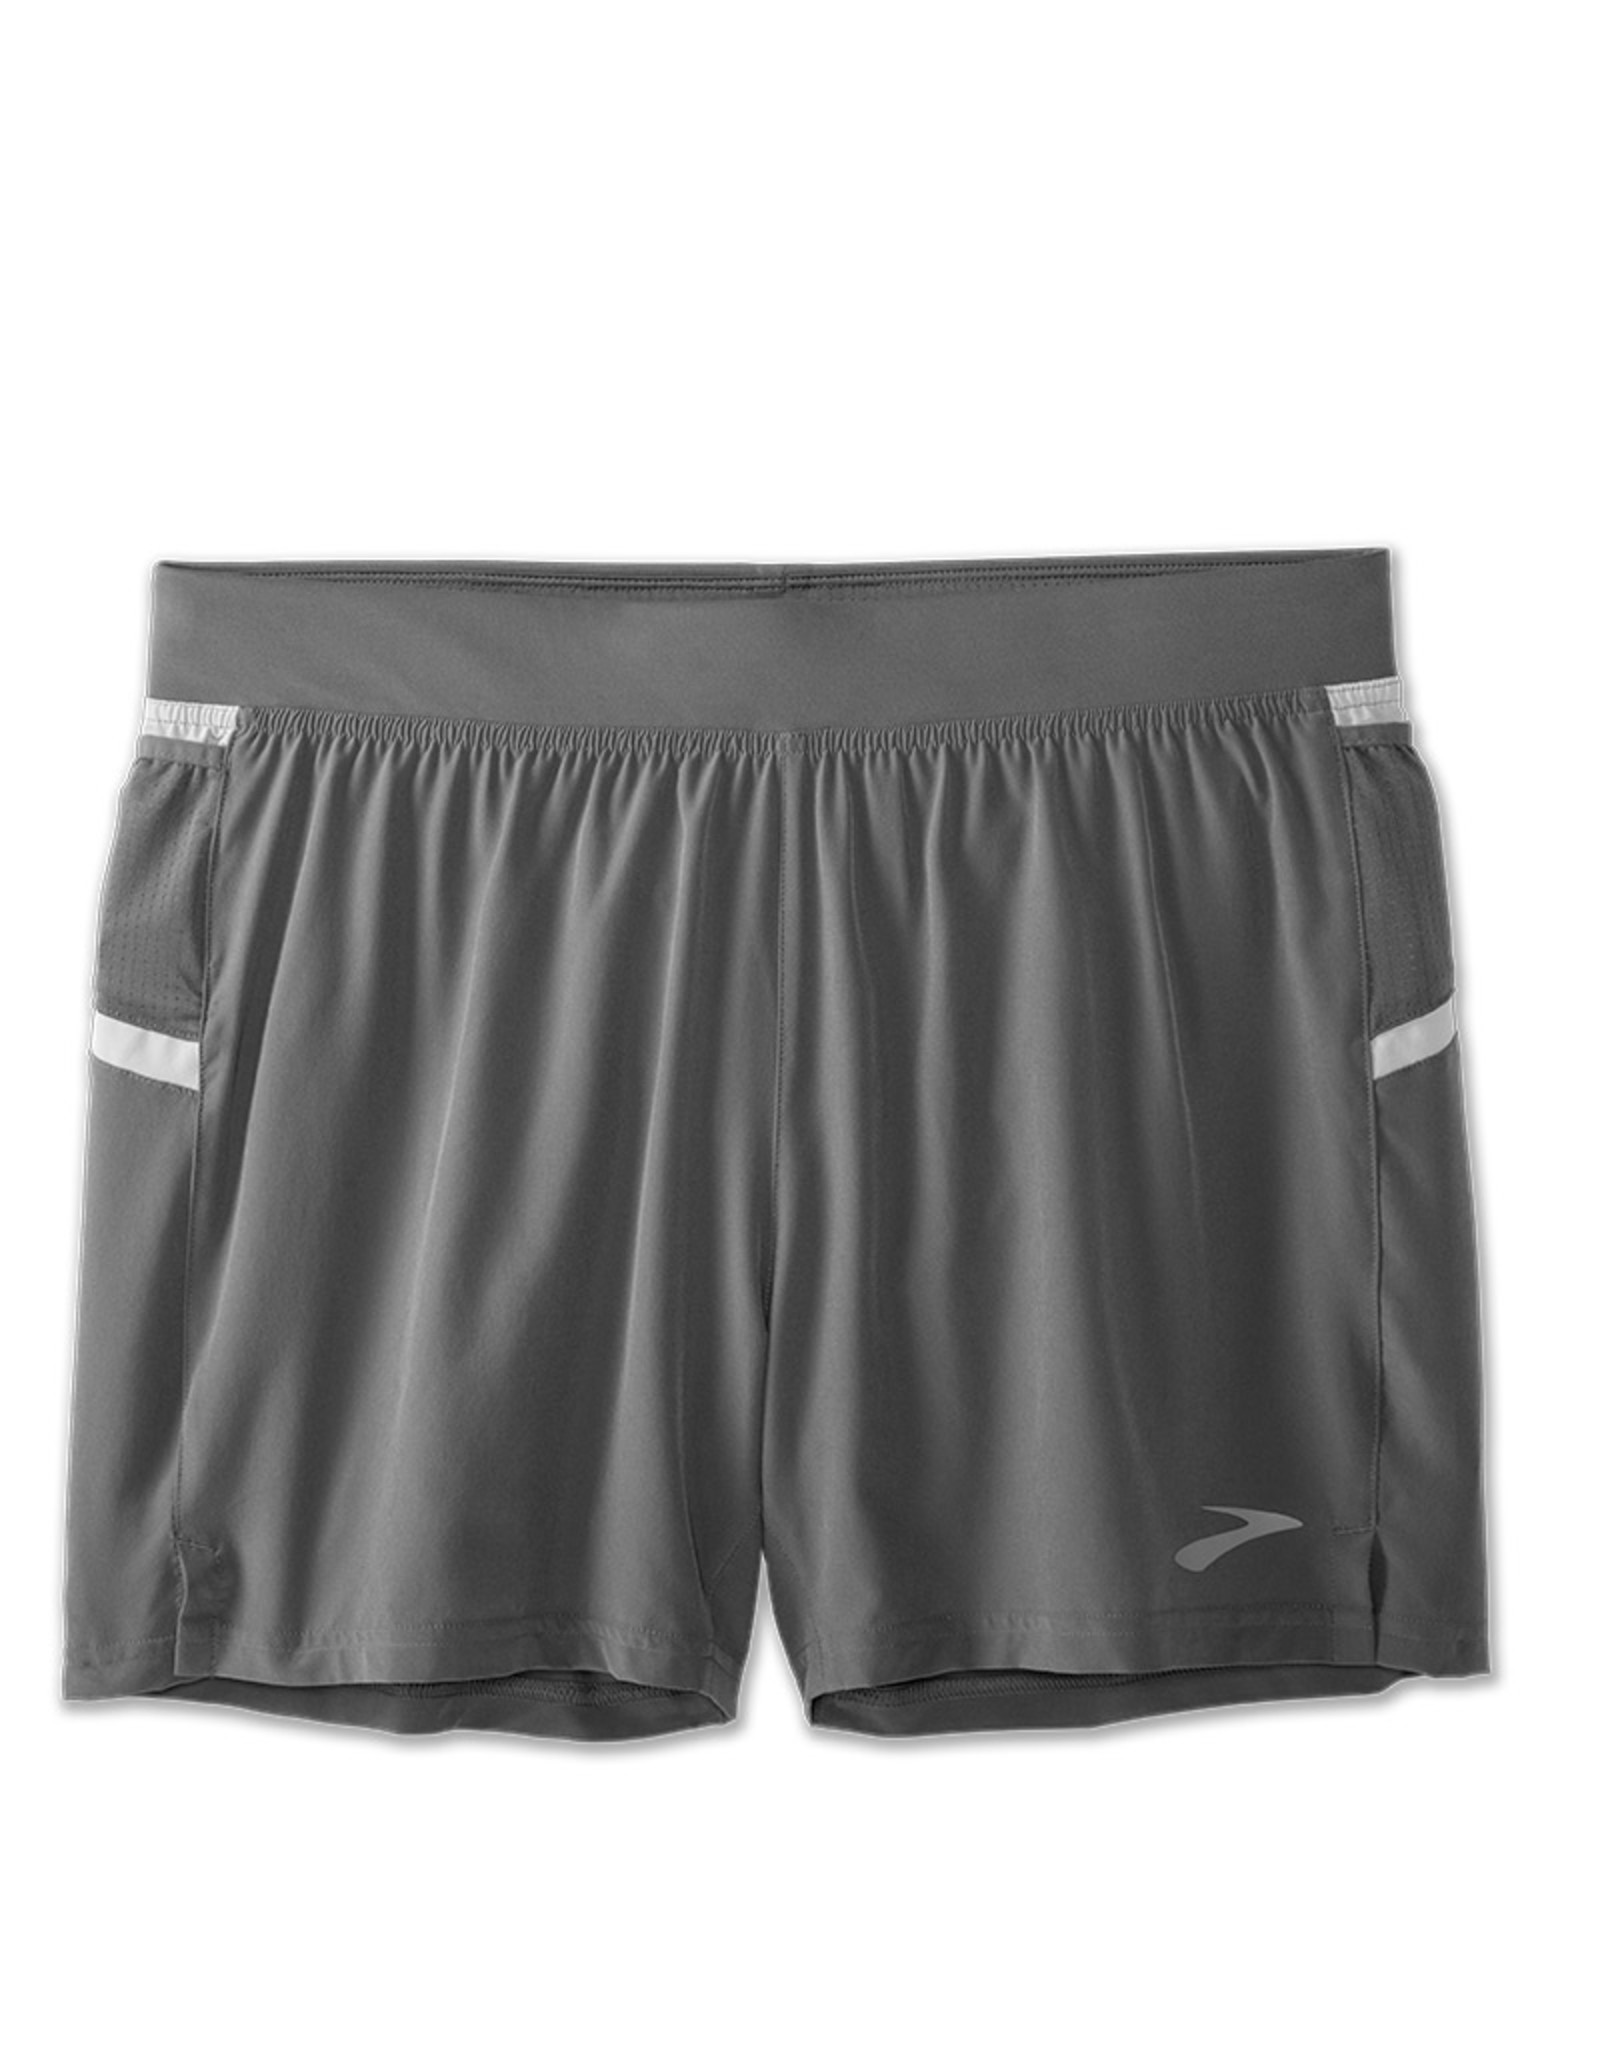 brooks 5 running shorts